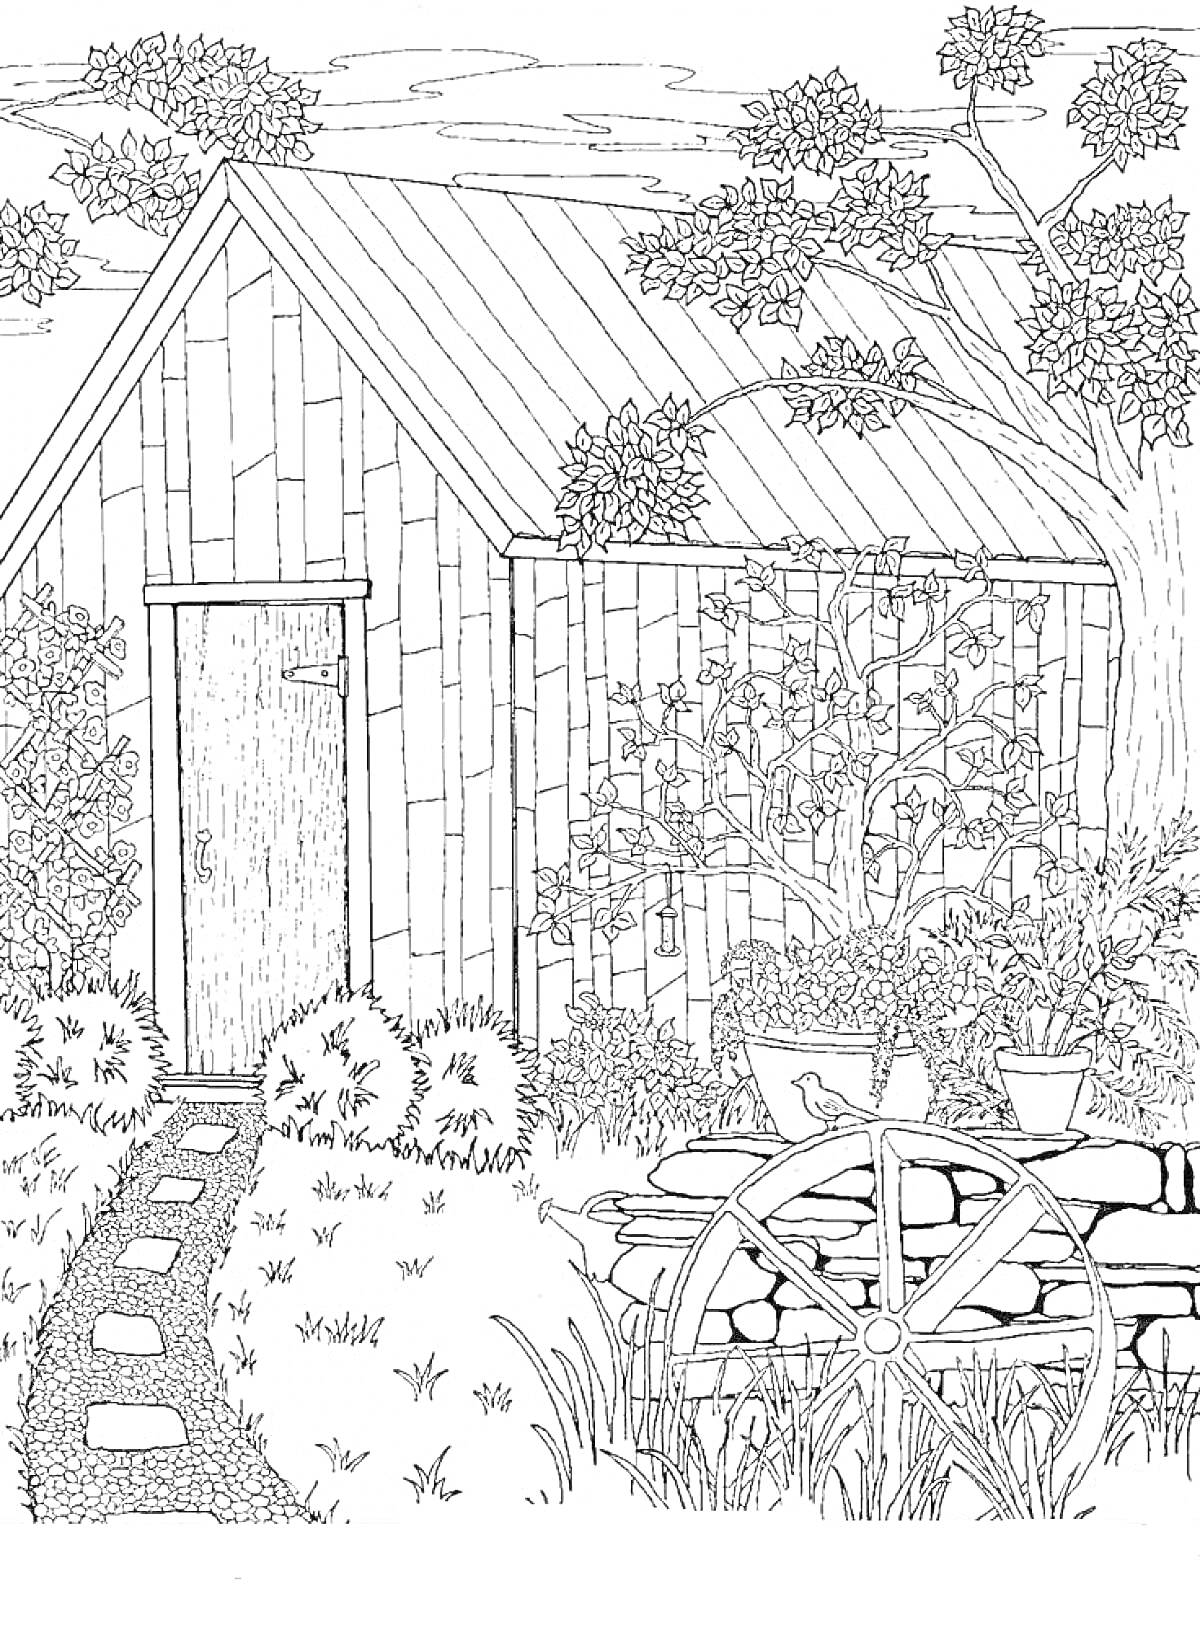  Деревянный сарай в саду с цветущими растениями, садовой телегой и деревьями